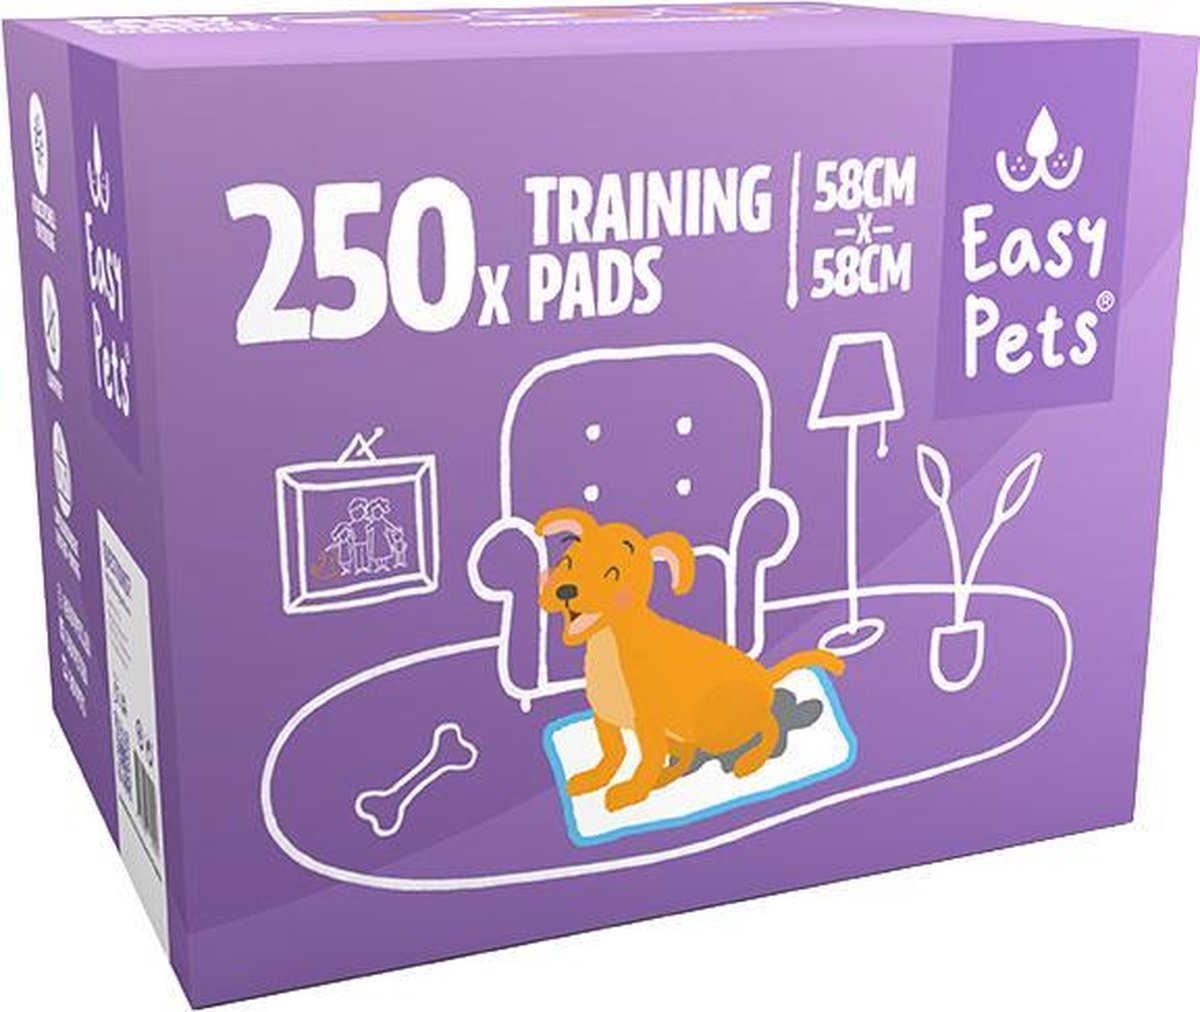 Easypets Puppy Training Pads - Zindelijkheidstraining - Hondentoilet - 58 x 58 cm - 250 stuks - Easypets